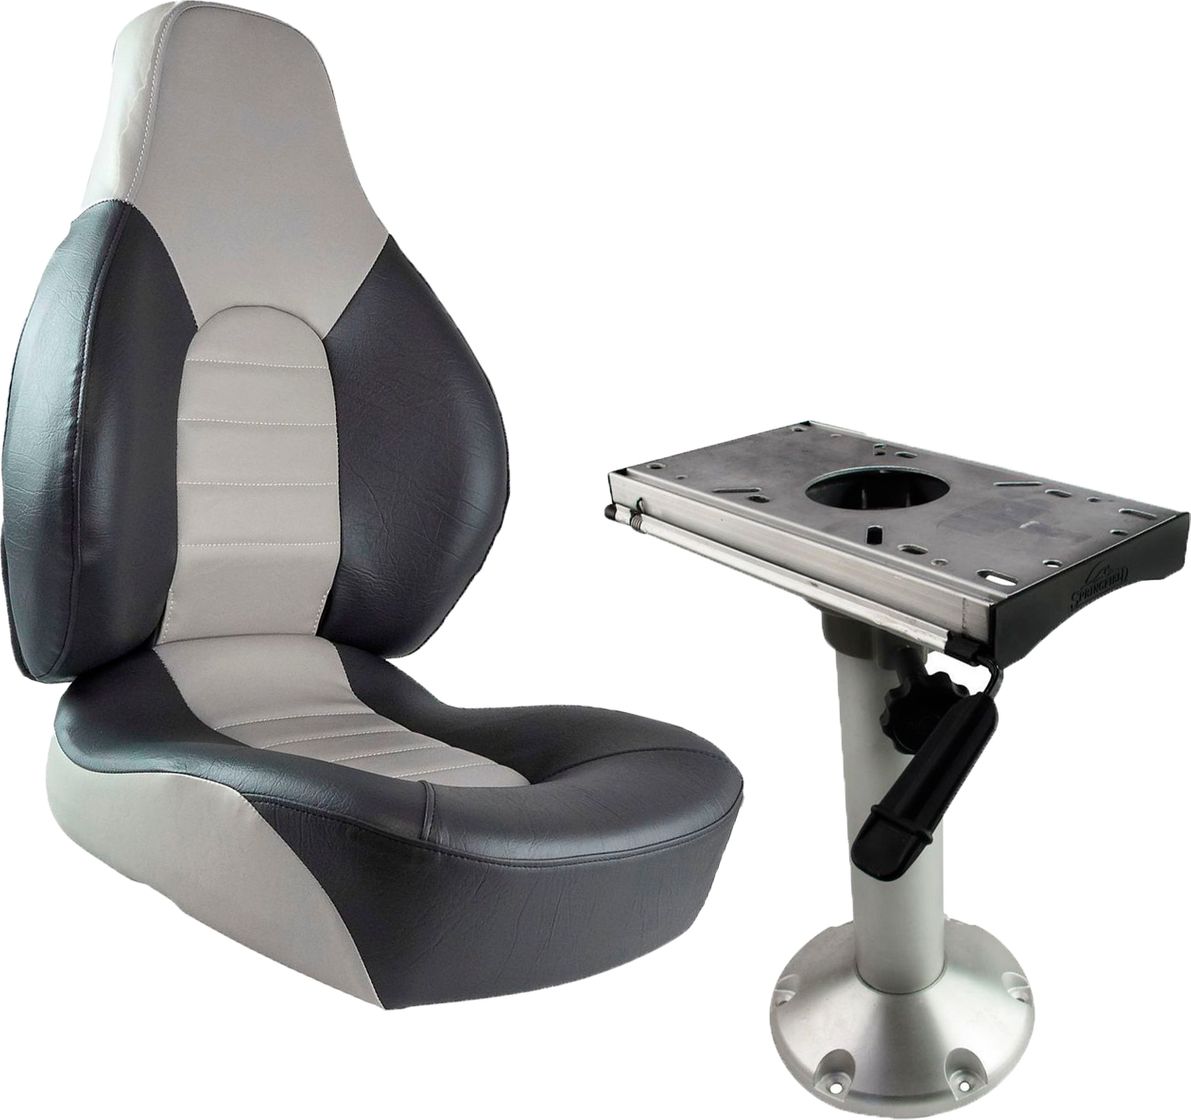 Кресло складное мягкое FISH PRO, серый/темно-серый на стойке с вращением и регулировкой вперед/назад 1041633_komp_1 кресло складное premium серый темно серый 106202501